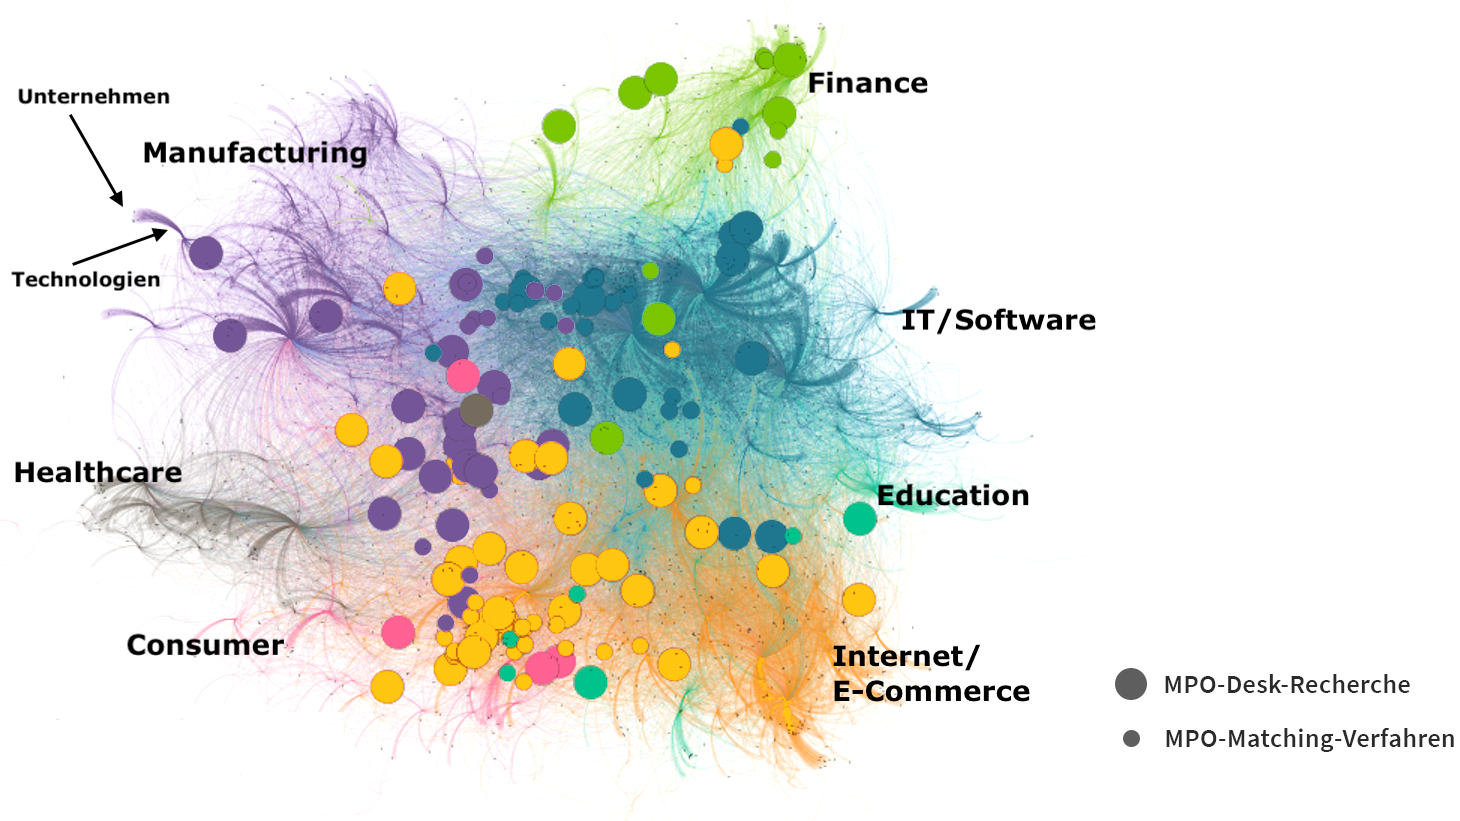 Die Abbildungs zeigt MPO innerhalb des deutschen Technologie-Netzwerks basierend auf Crunchbase-Tags